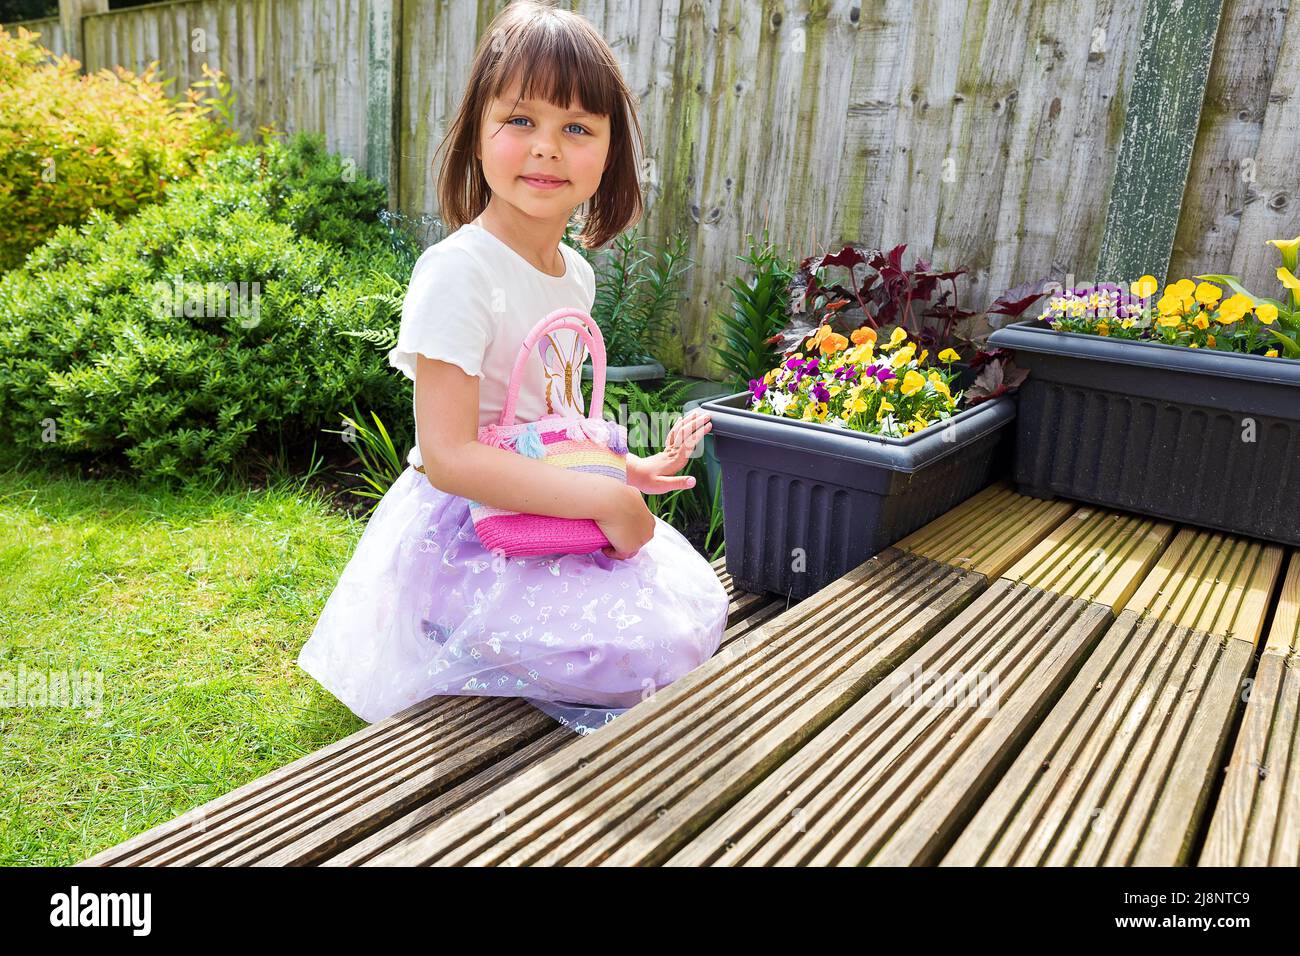 Un enfant souriant mignon joue dans l'arrière-cour avec un petit sac rose. Jour ensoleillé. Bon temps Banque D'Images